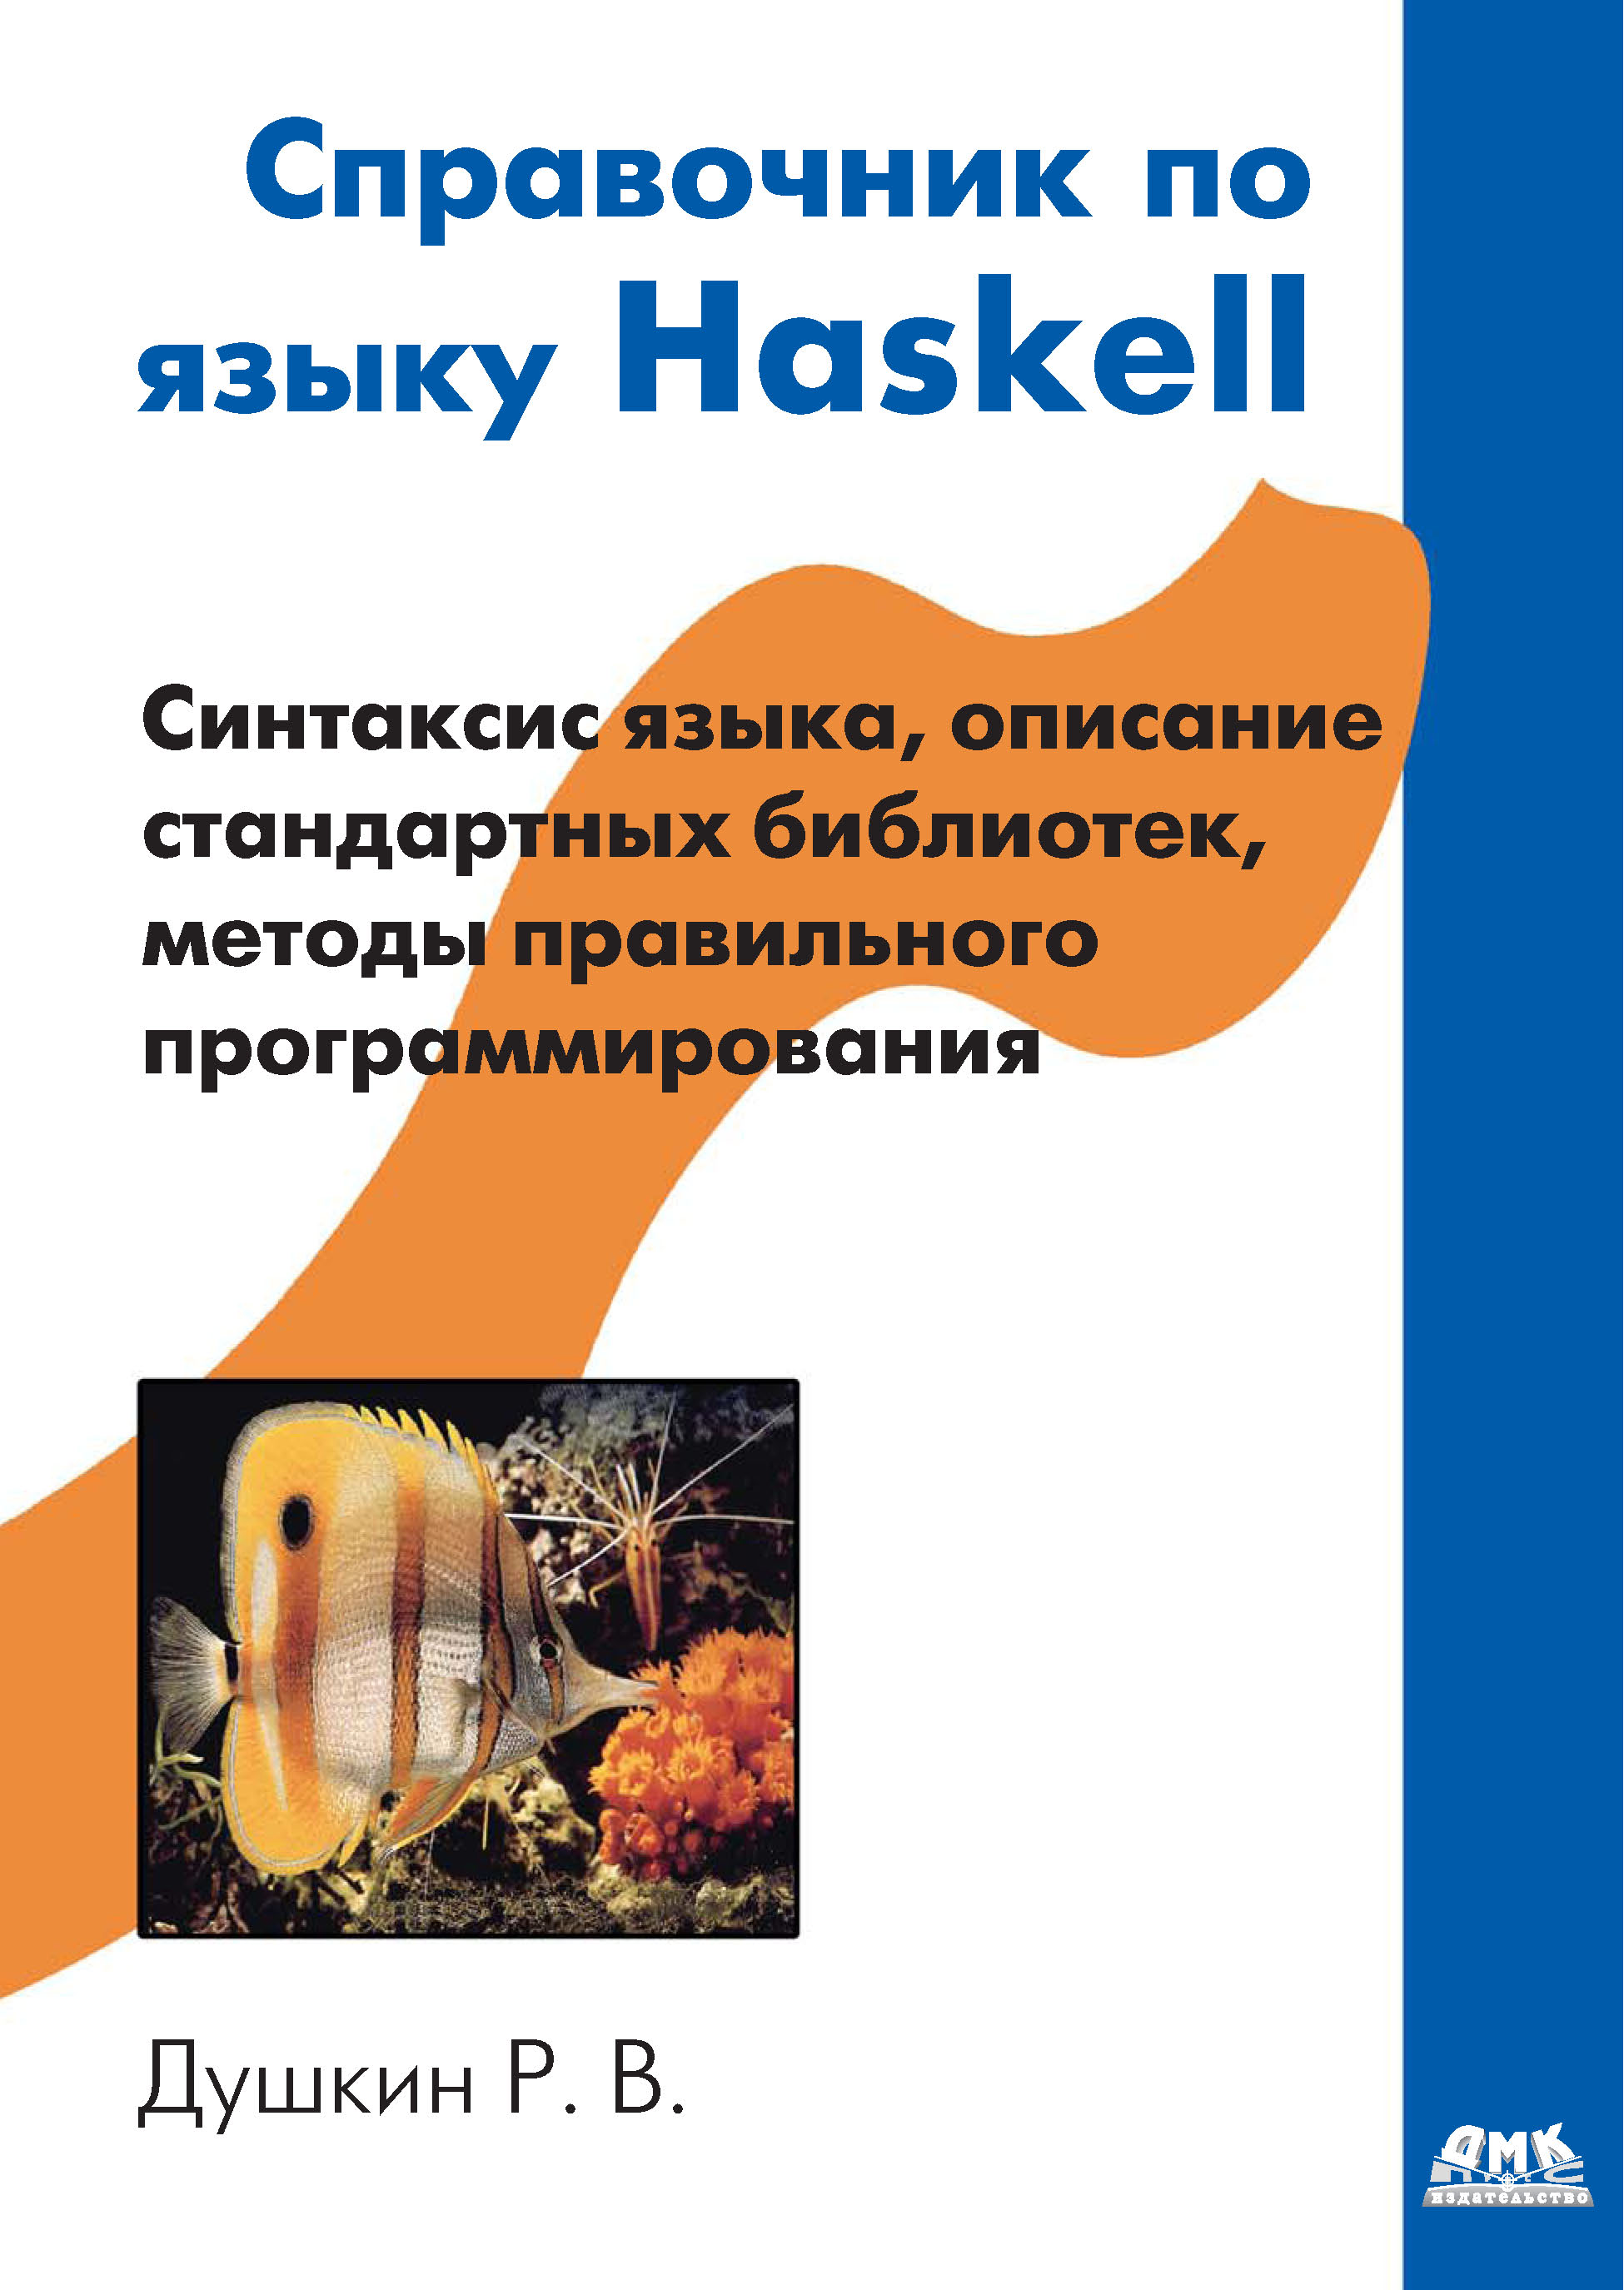 Книга  Справочник по языку Haskell созданная Р. В. Душкин может относится к жанру другие справочники, программирование. Стоимость электронной книги Справочник по языку Haskell с идентификатором 6283752 составляет 319.00 руб.